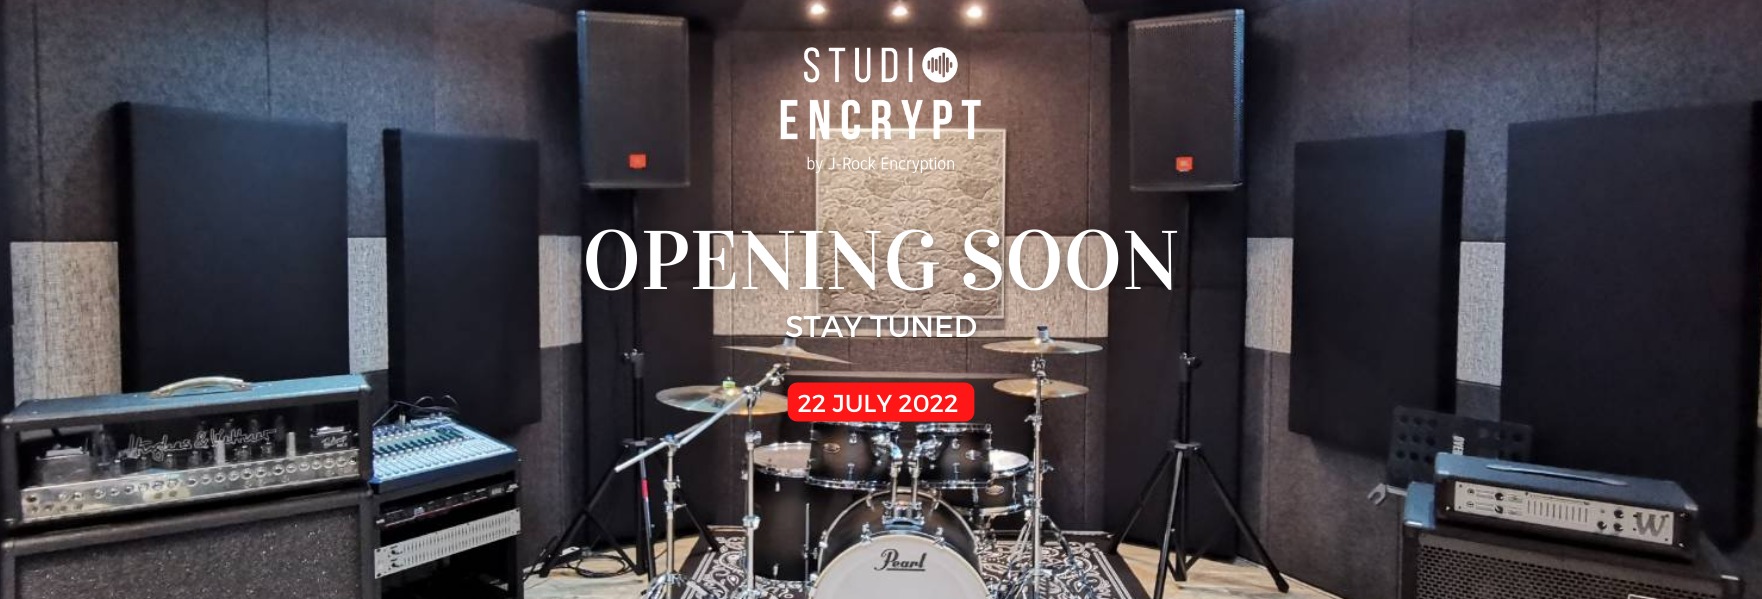 STUDIO Encrypt ห้องซ้อมดนตรีที่มีร้านกาแฟ อุปกรณ์ครบ ระบบเสียงคุณภาพ เพื่อประสบการณ์การซ้อมดนตรีที่ด